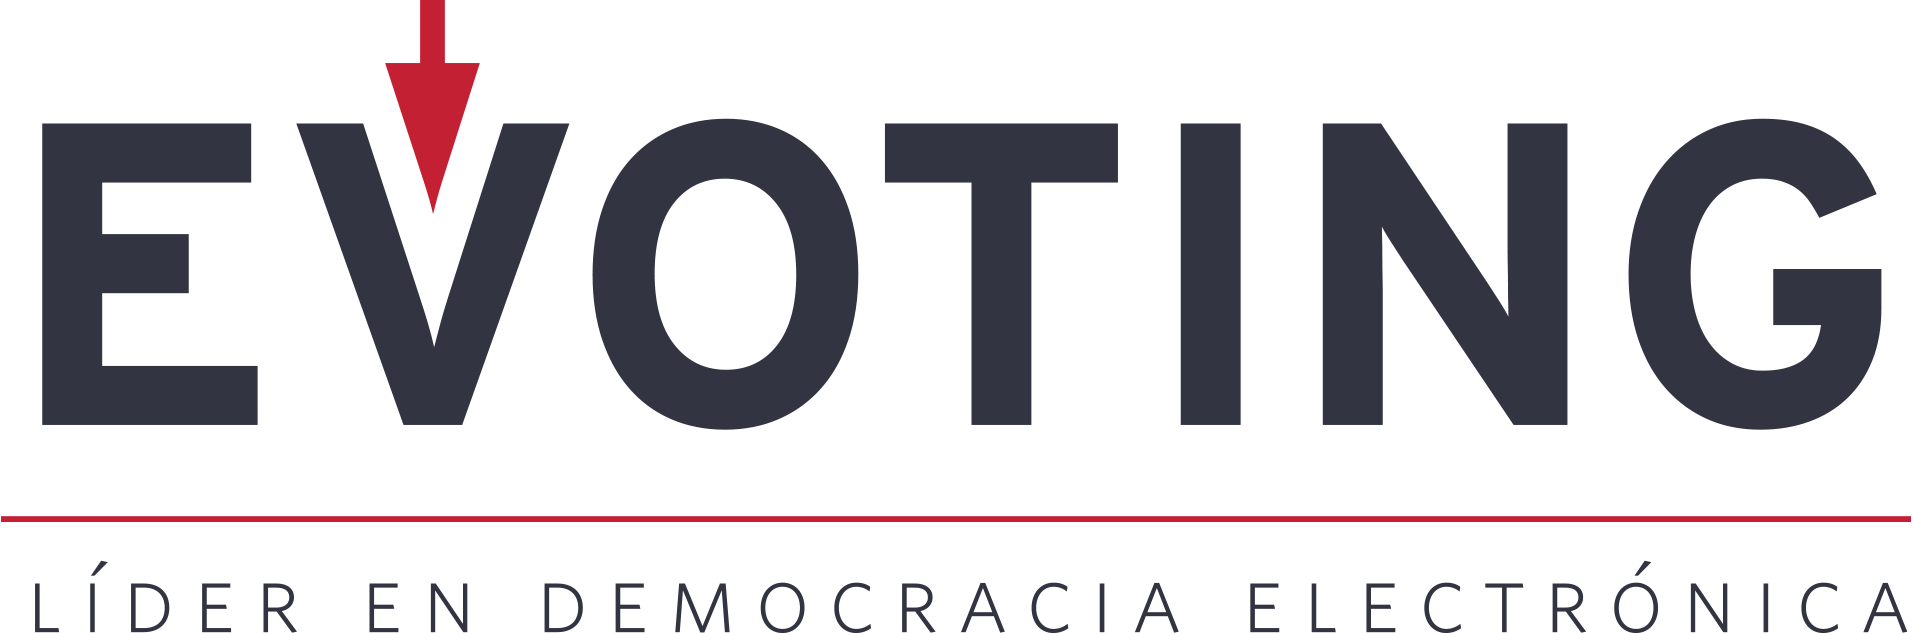 Logo Evoting - Líder en democracia electronica